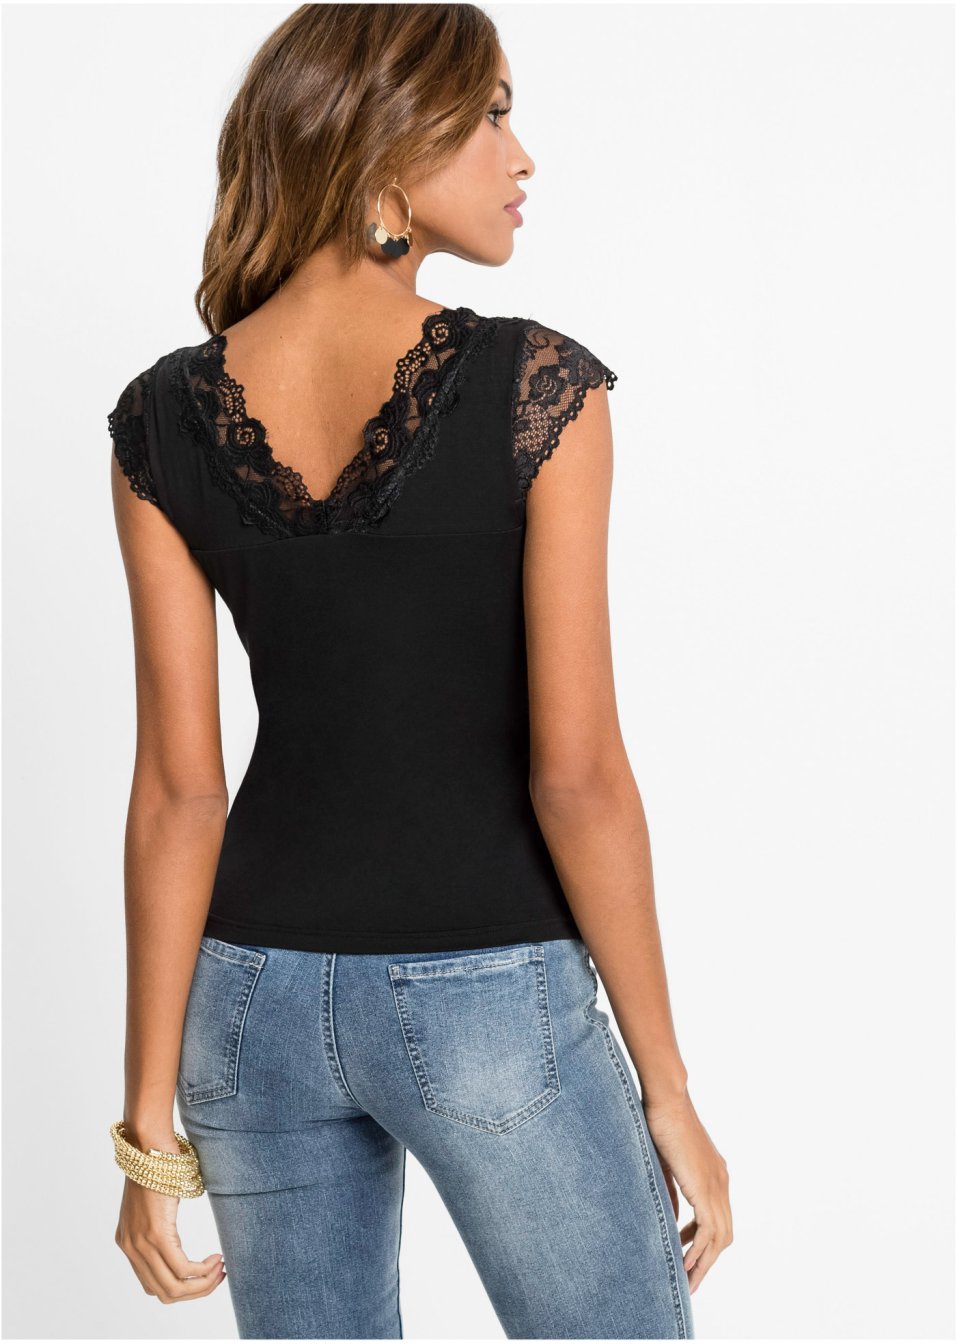 Spitzen-Shirt schwarz - Damen - BODYFLIRT boutique - bonprix.de